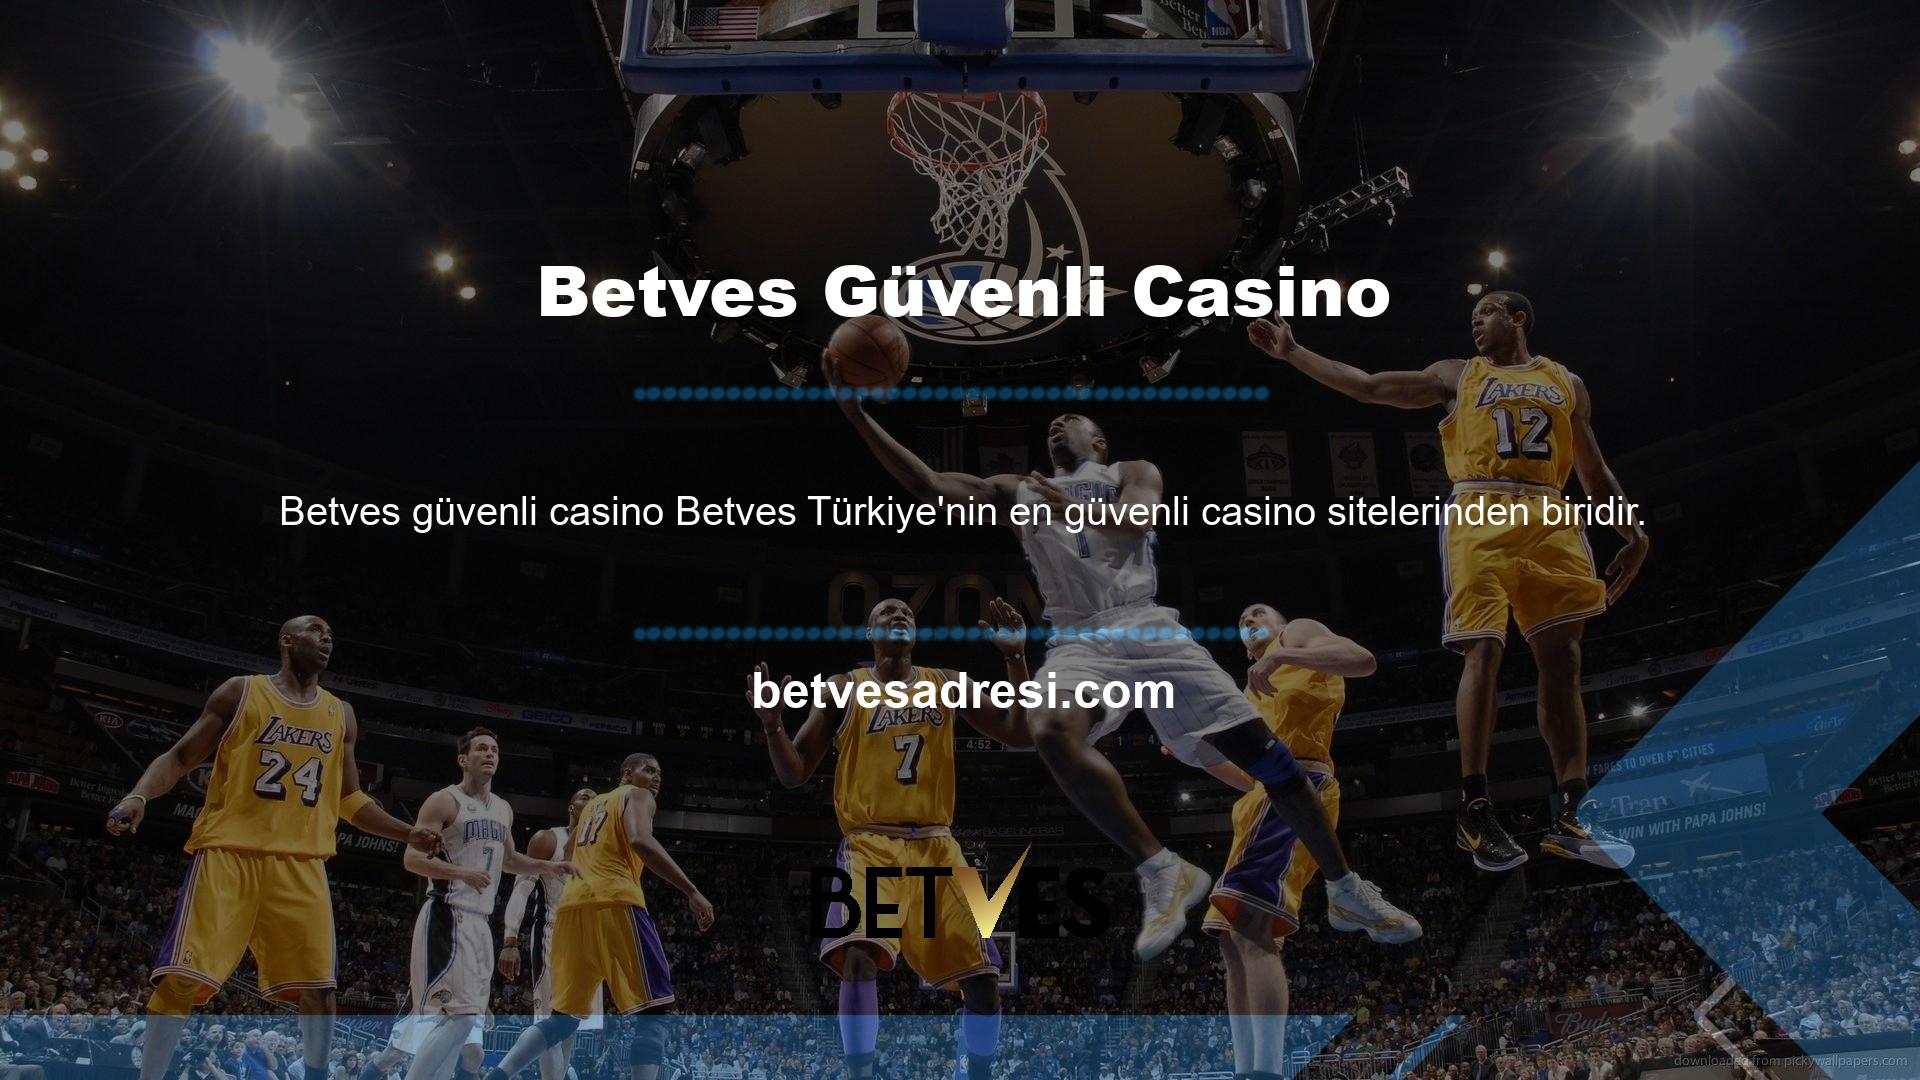 Betves, tüm internet bahisçileri arasında en popüler ve çekici organizasyonlardan biridir